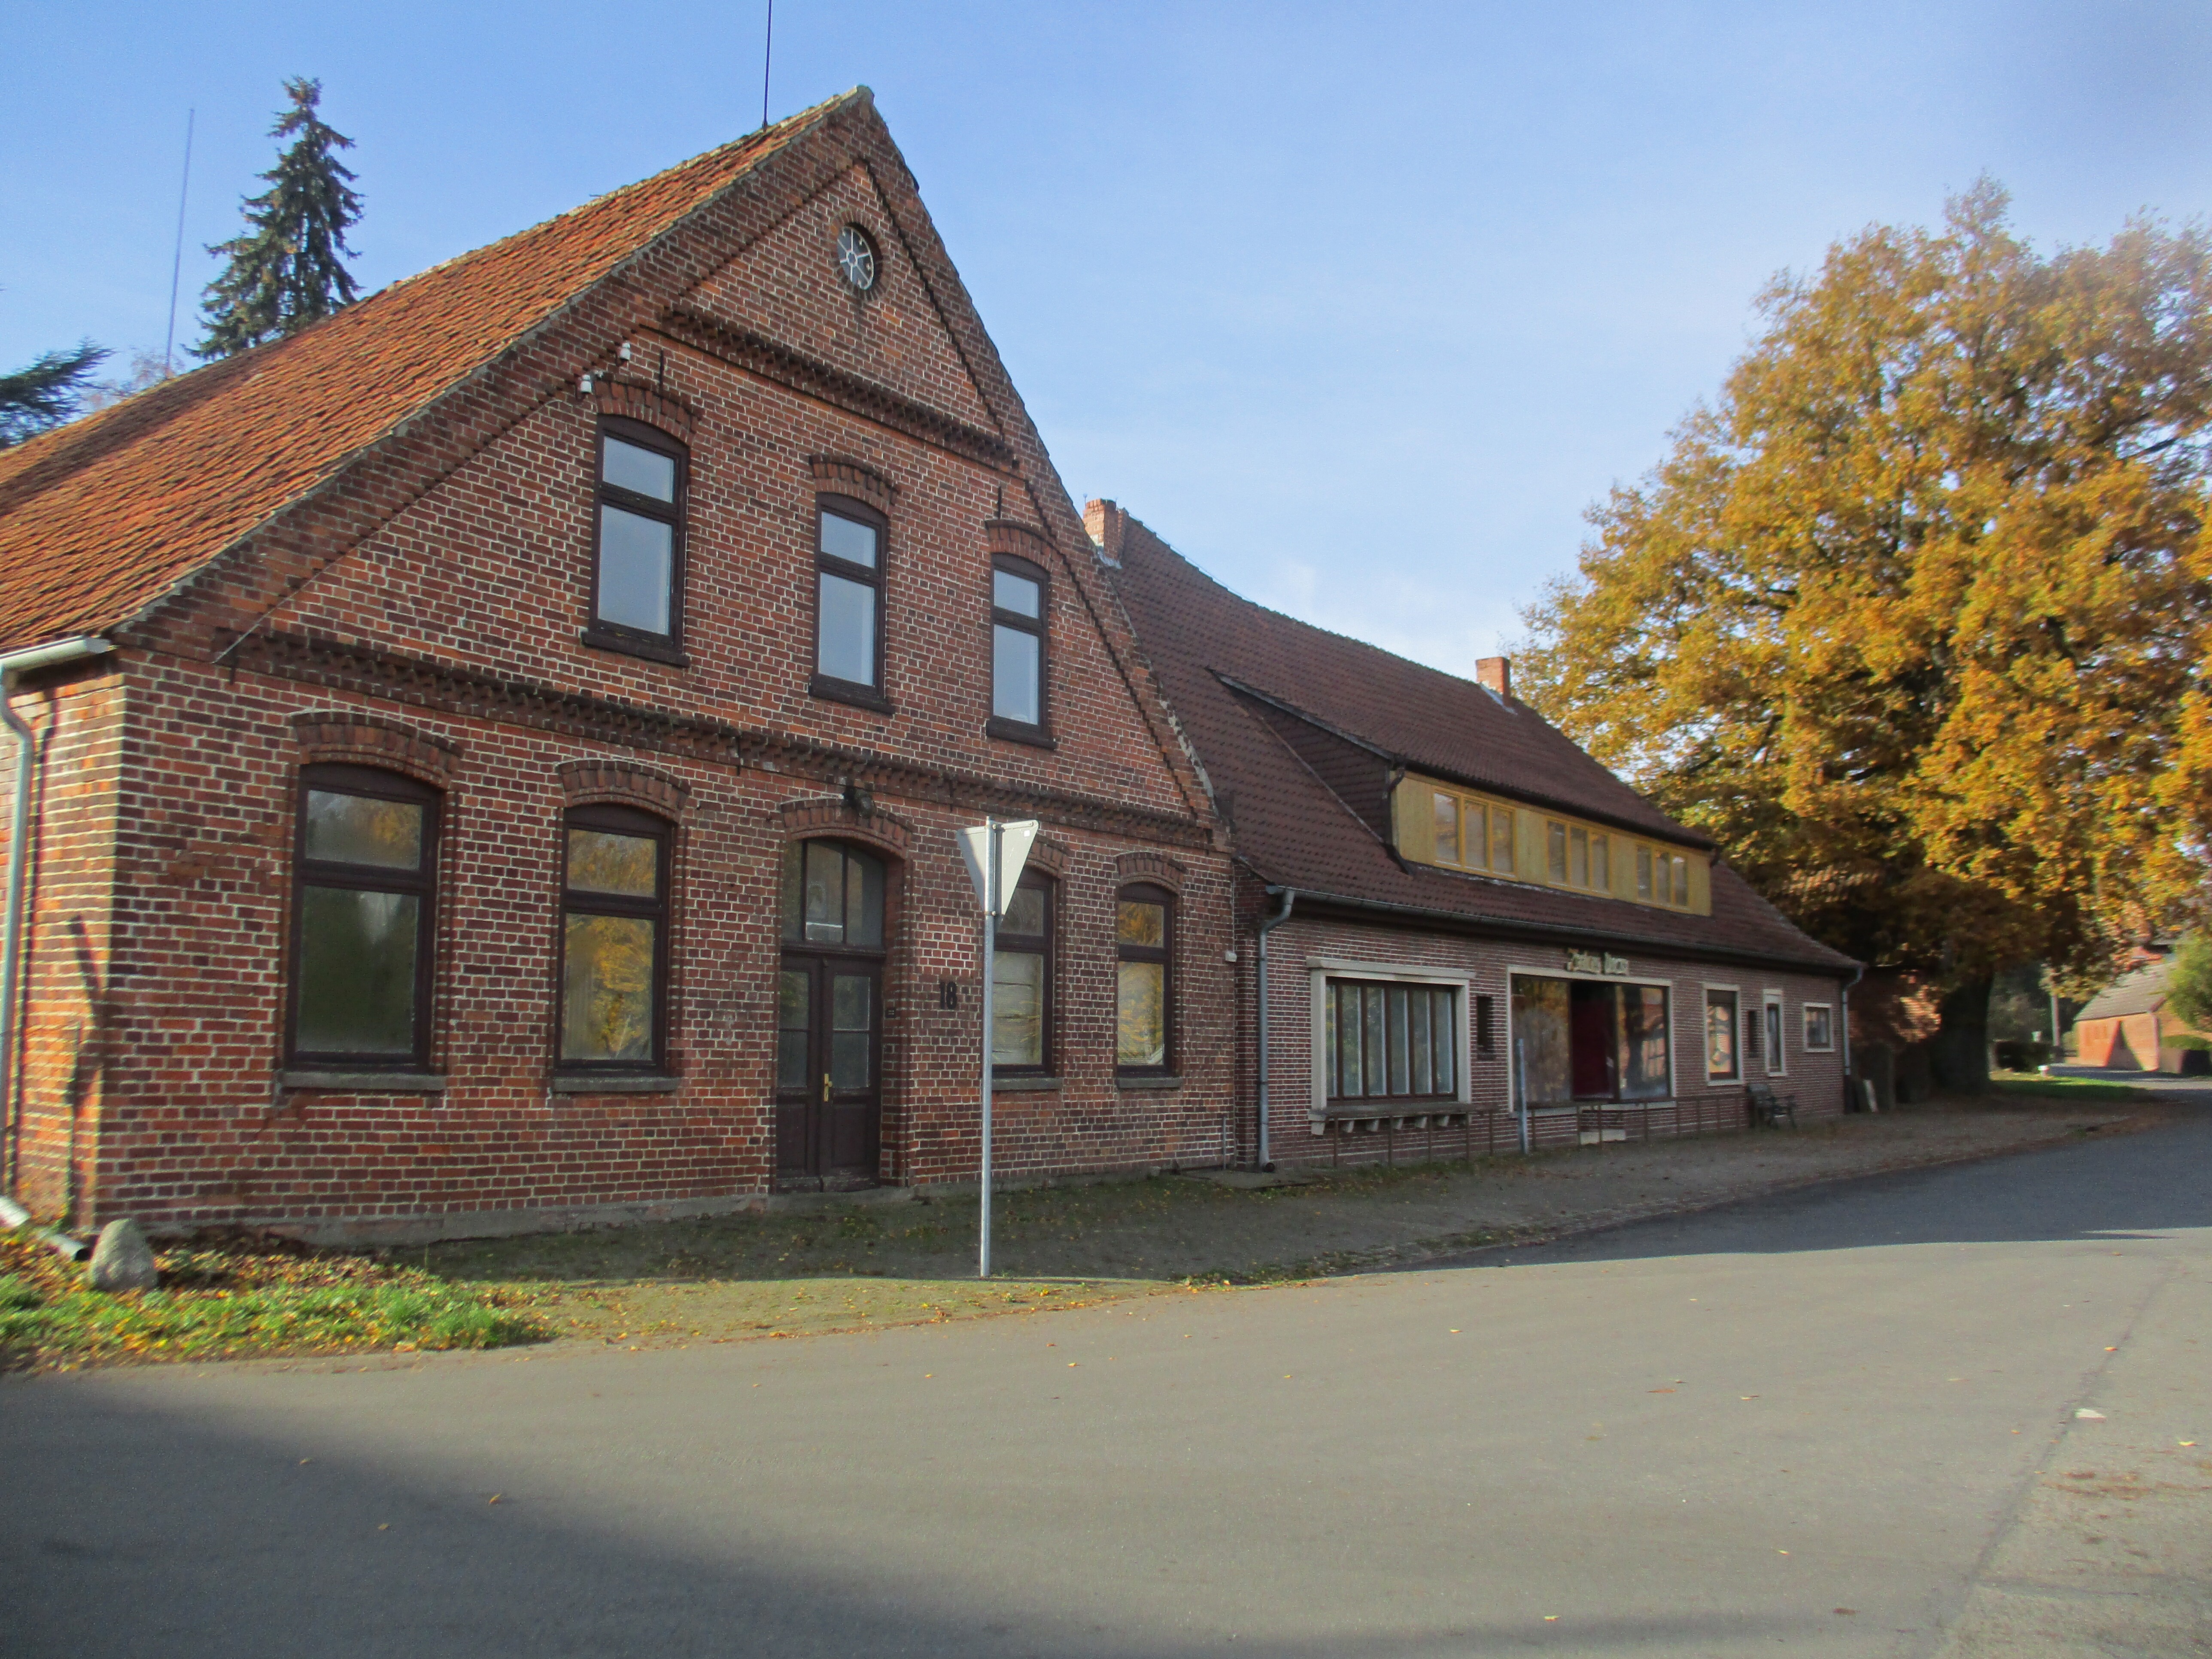 Bahnhofswirtschaft Uenzen in der Samtgemeinde Bruchhausen-Vilsen - Flecken Bruchhausen-Vilsen - OT Uenzen (Kreismuseum Syke CC BY-NC-SA)